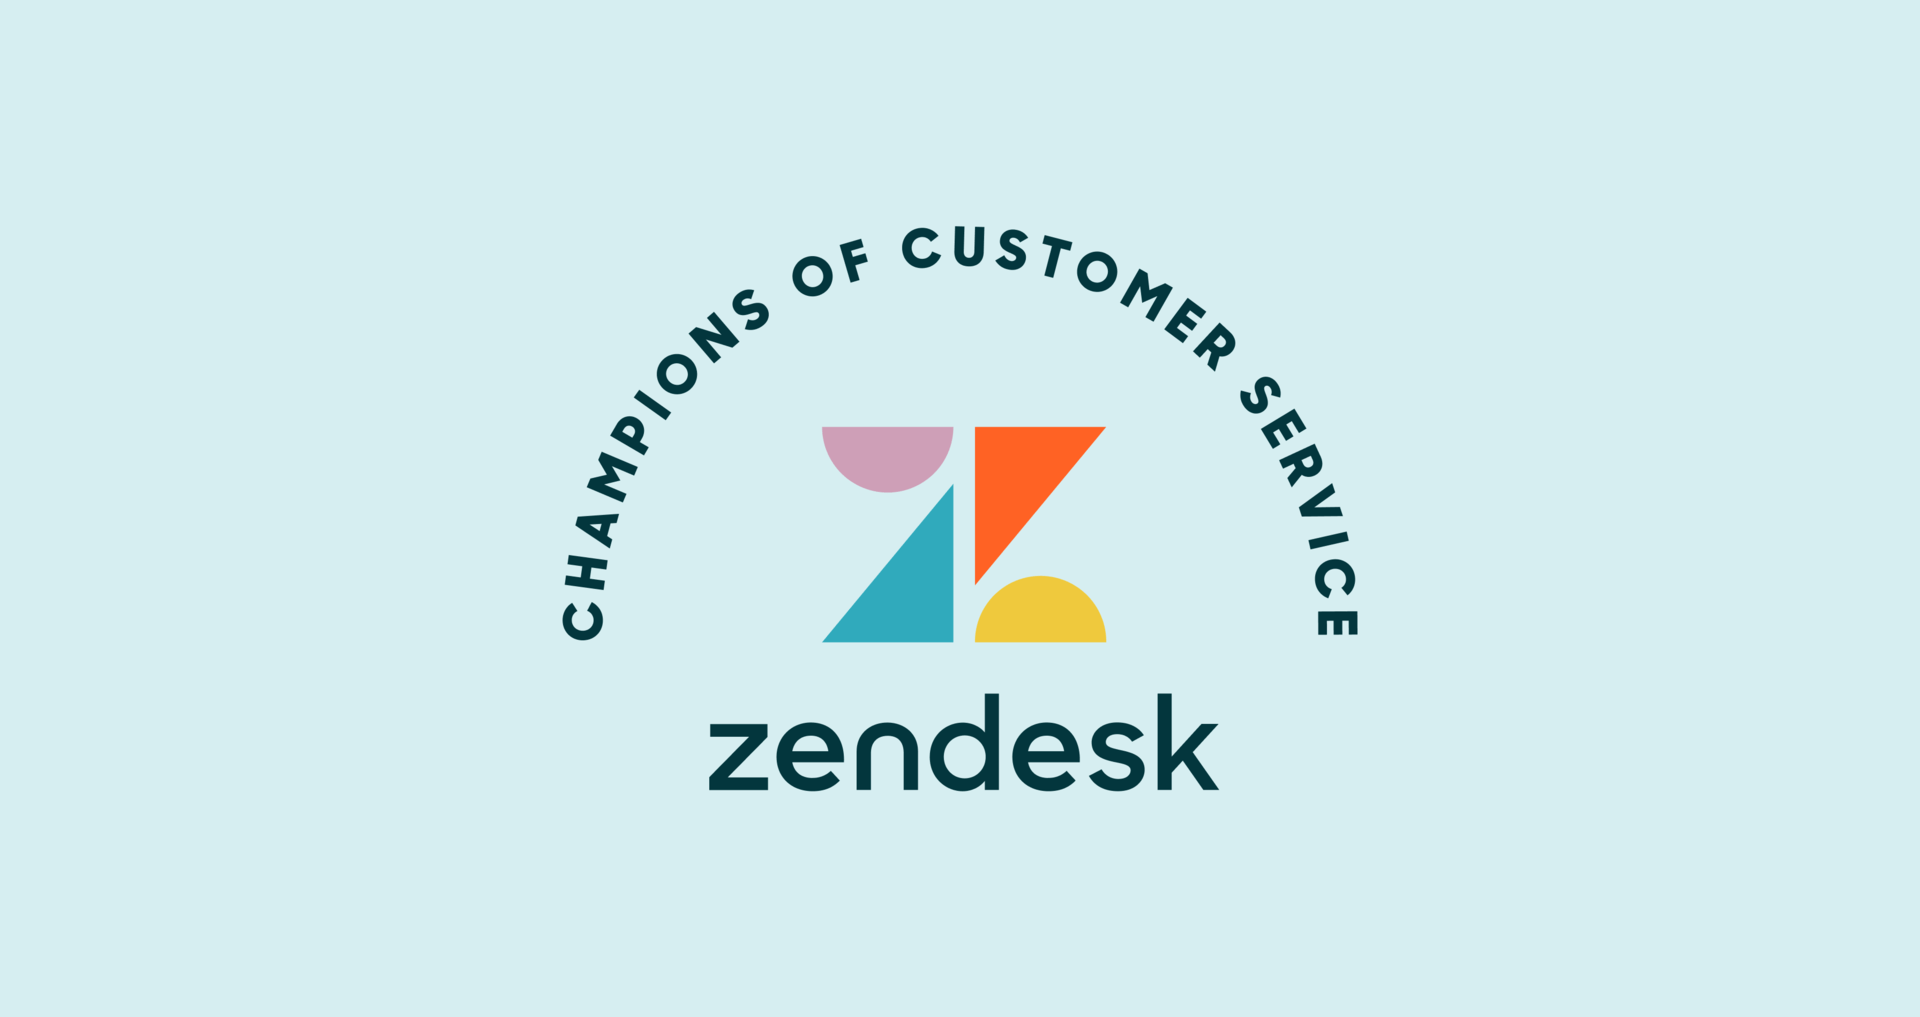 Bilde av Zendesk sin logo som et passende bilde til artikkelen om gratis Zendesk suite trial.